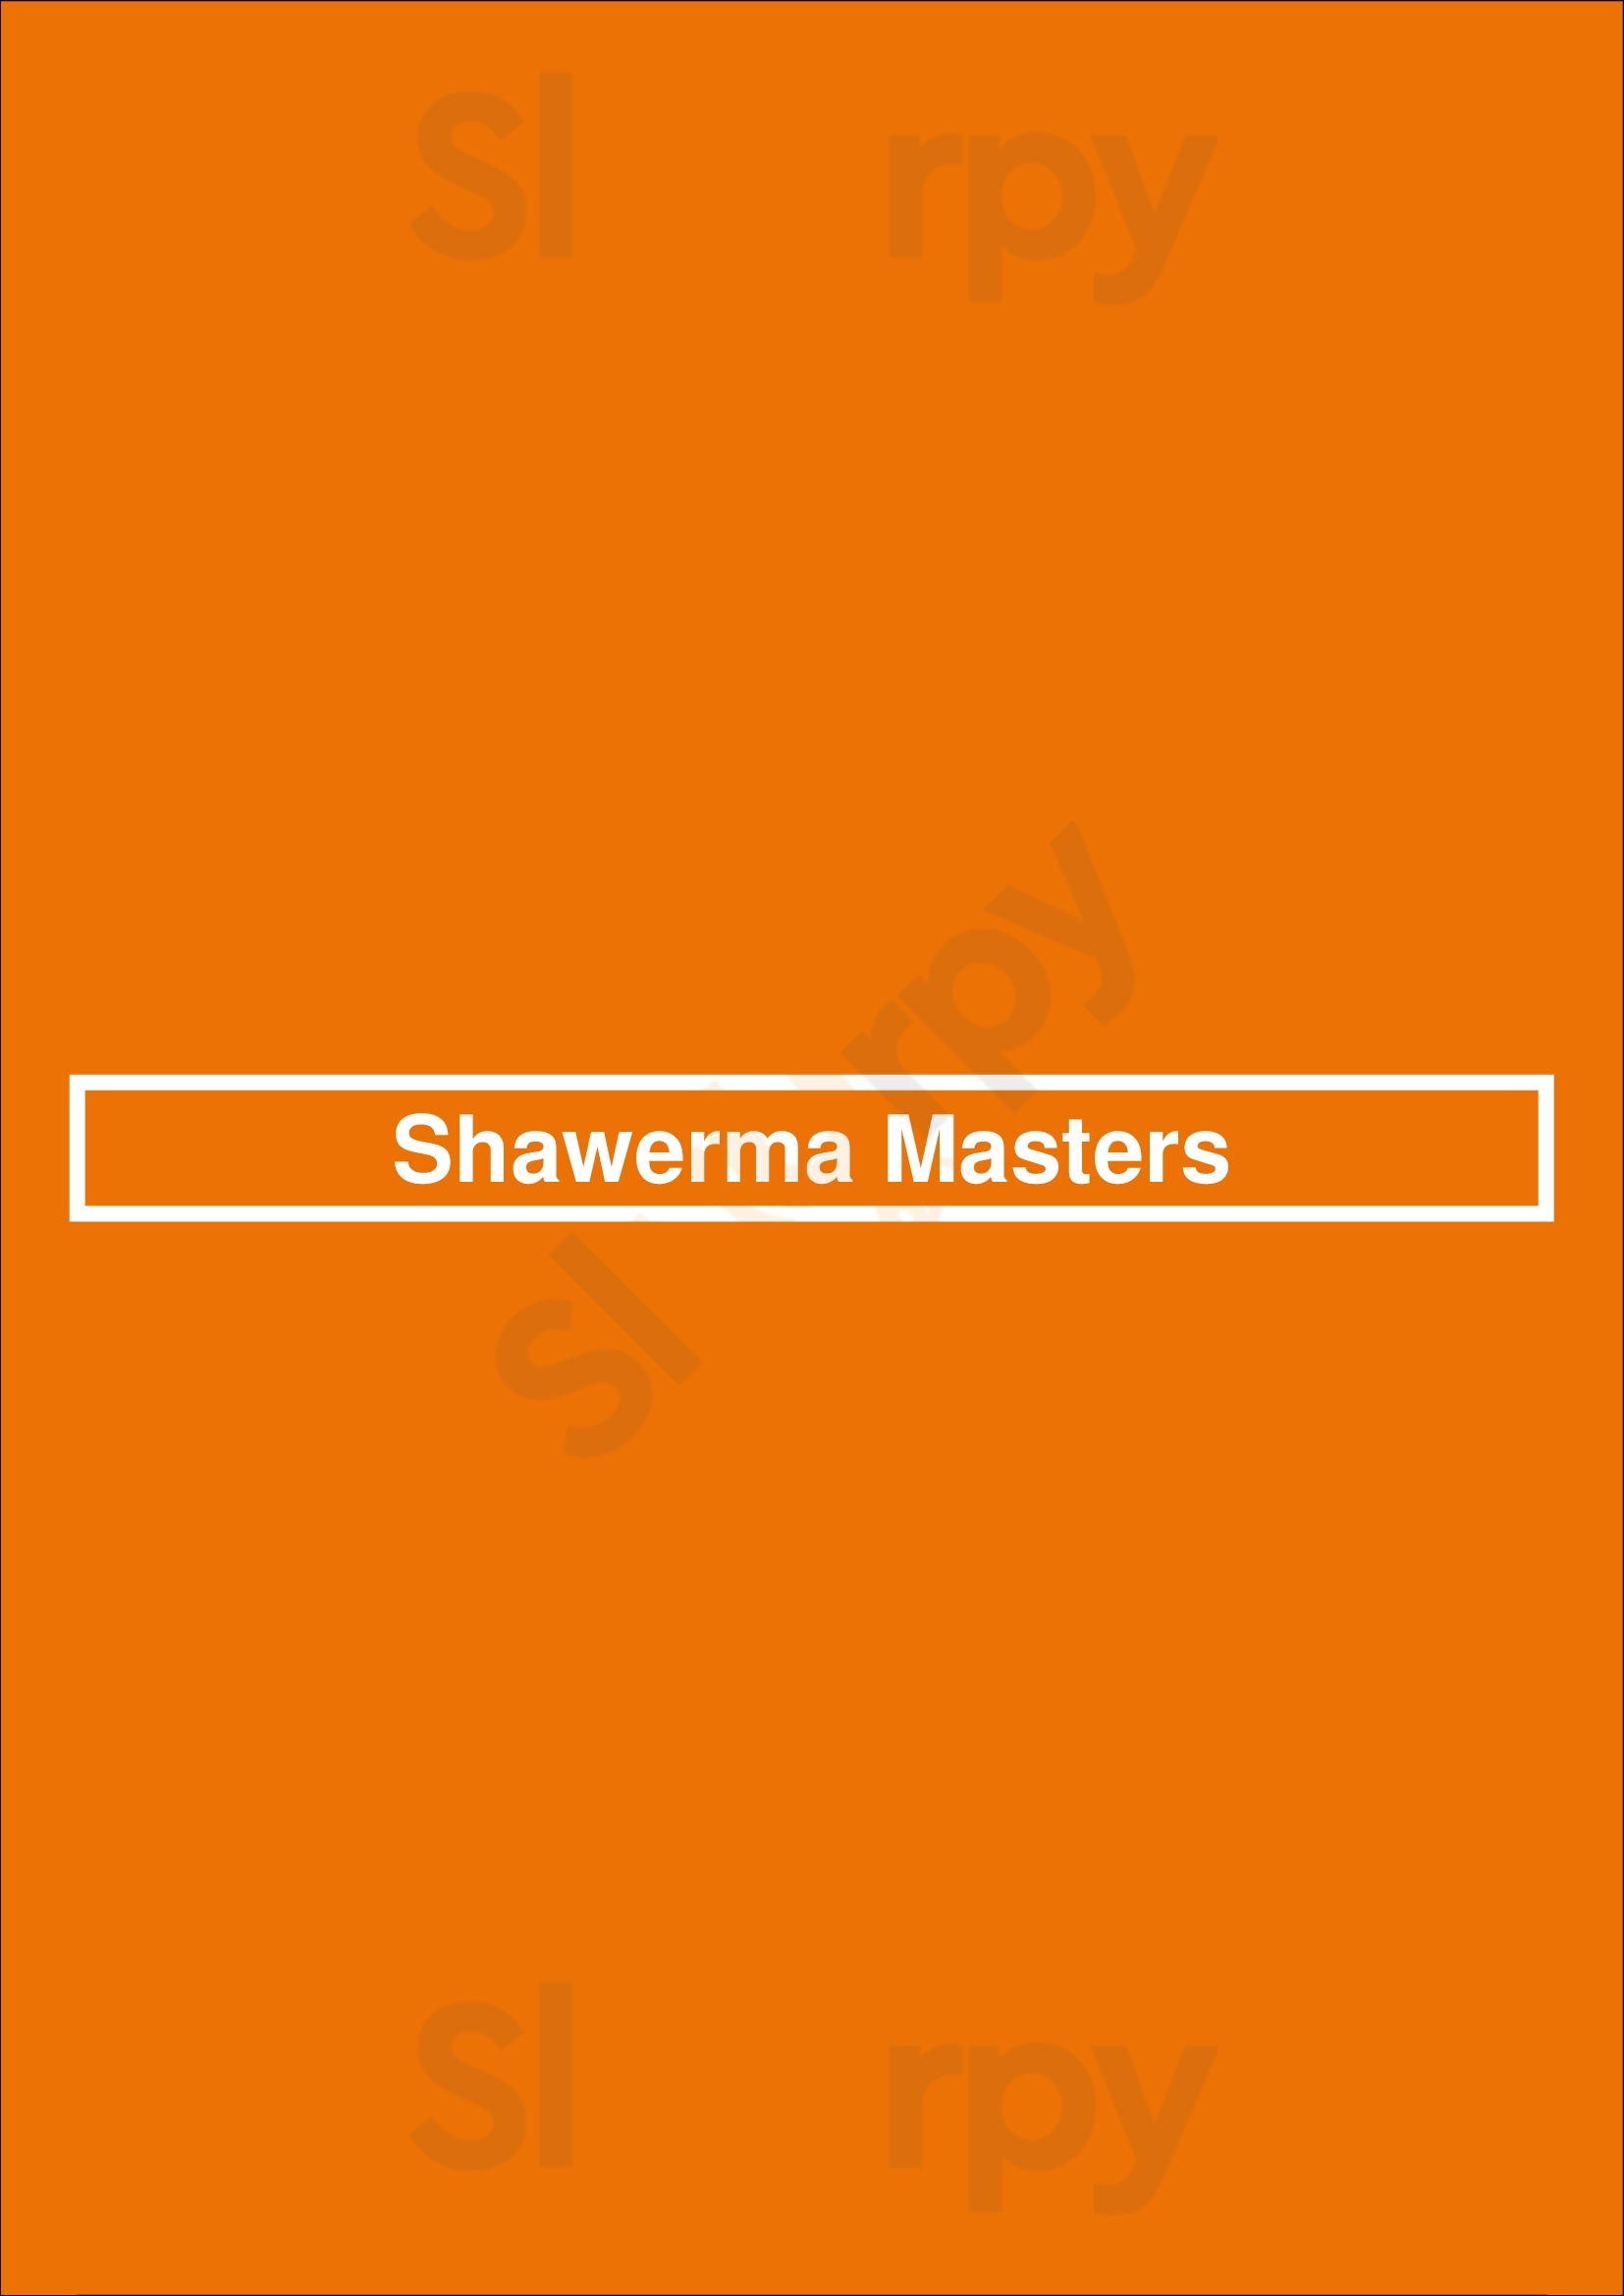 Shawerma Masters Pasadena Menu - 1